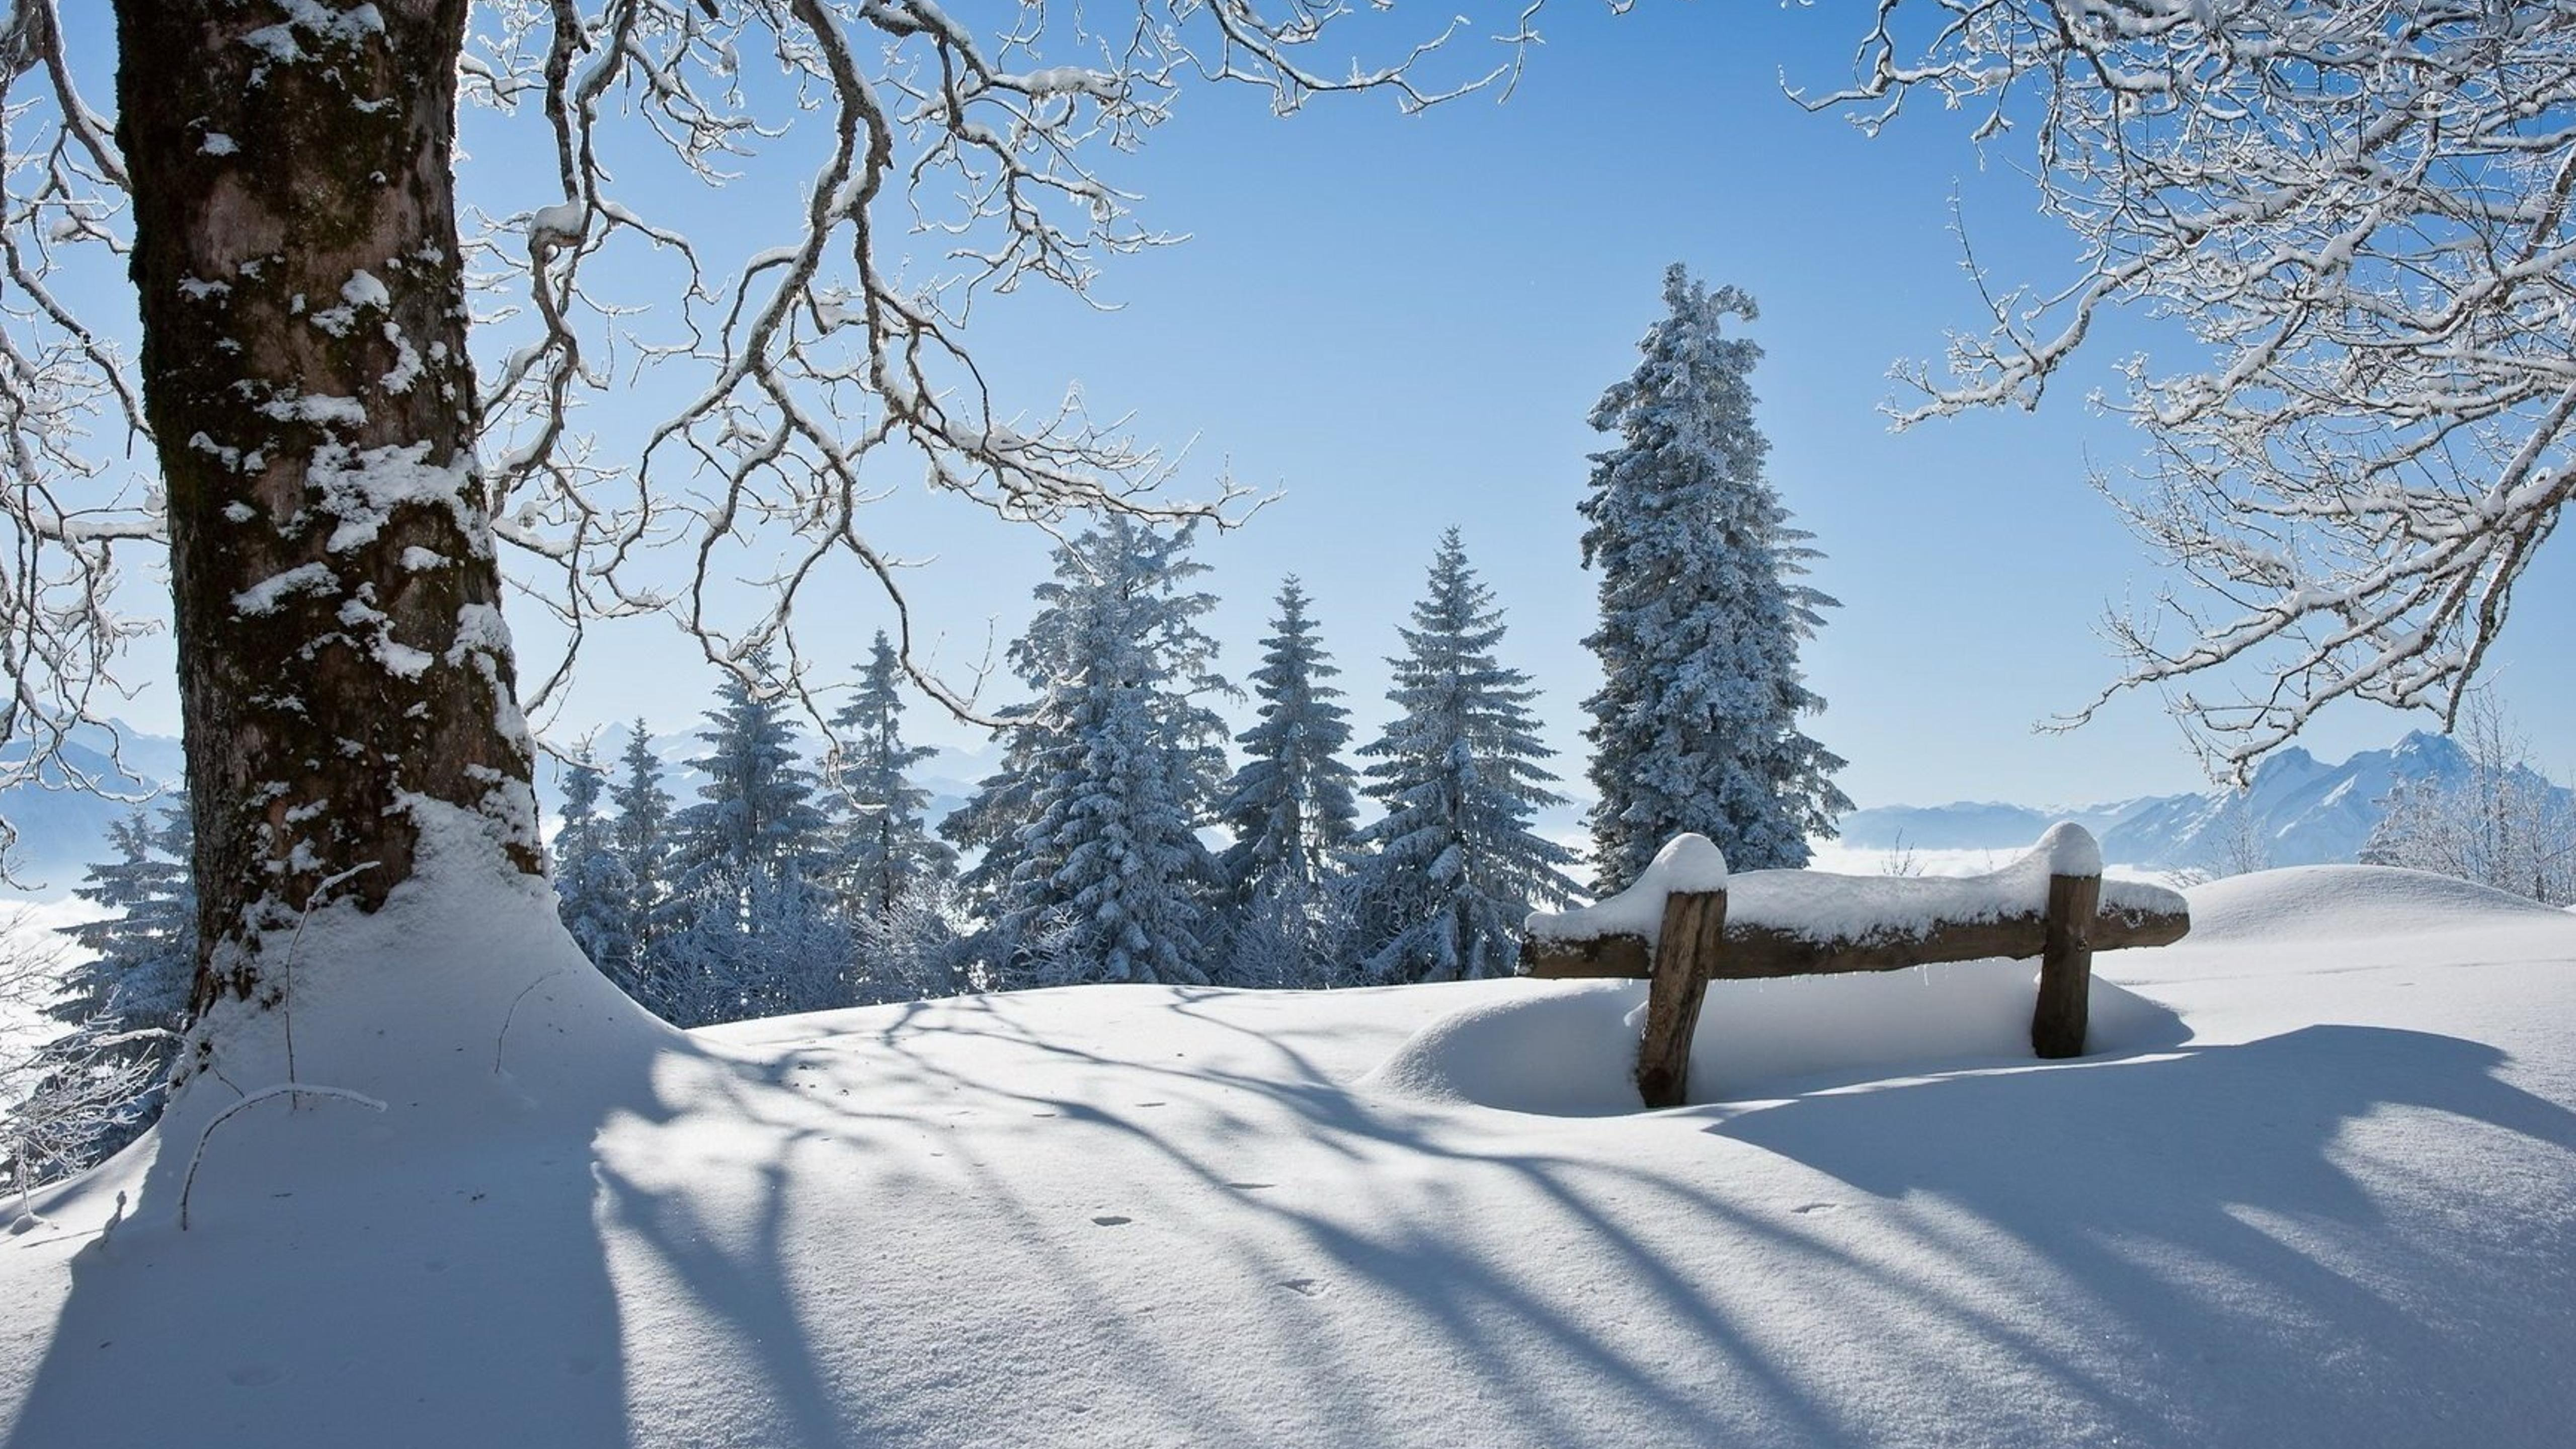 Снежная красота. Зима. Зимний пейзаж. Снежная зима. Снежный пейзаж.